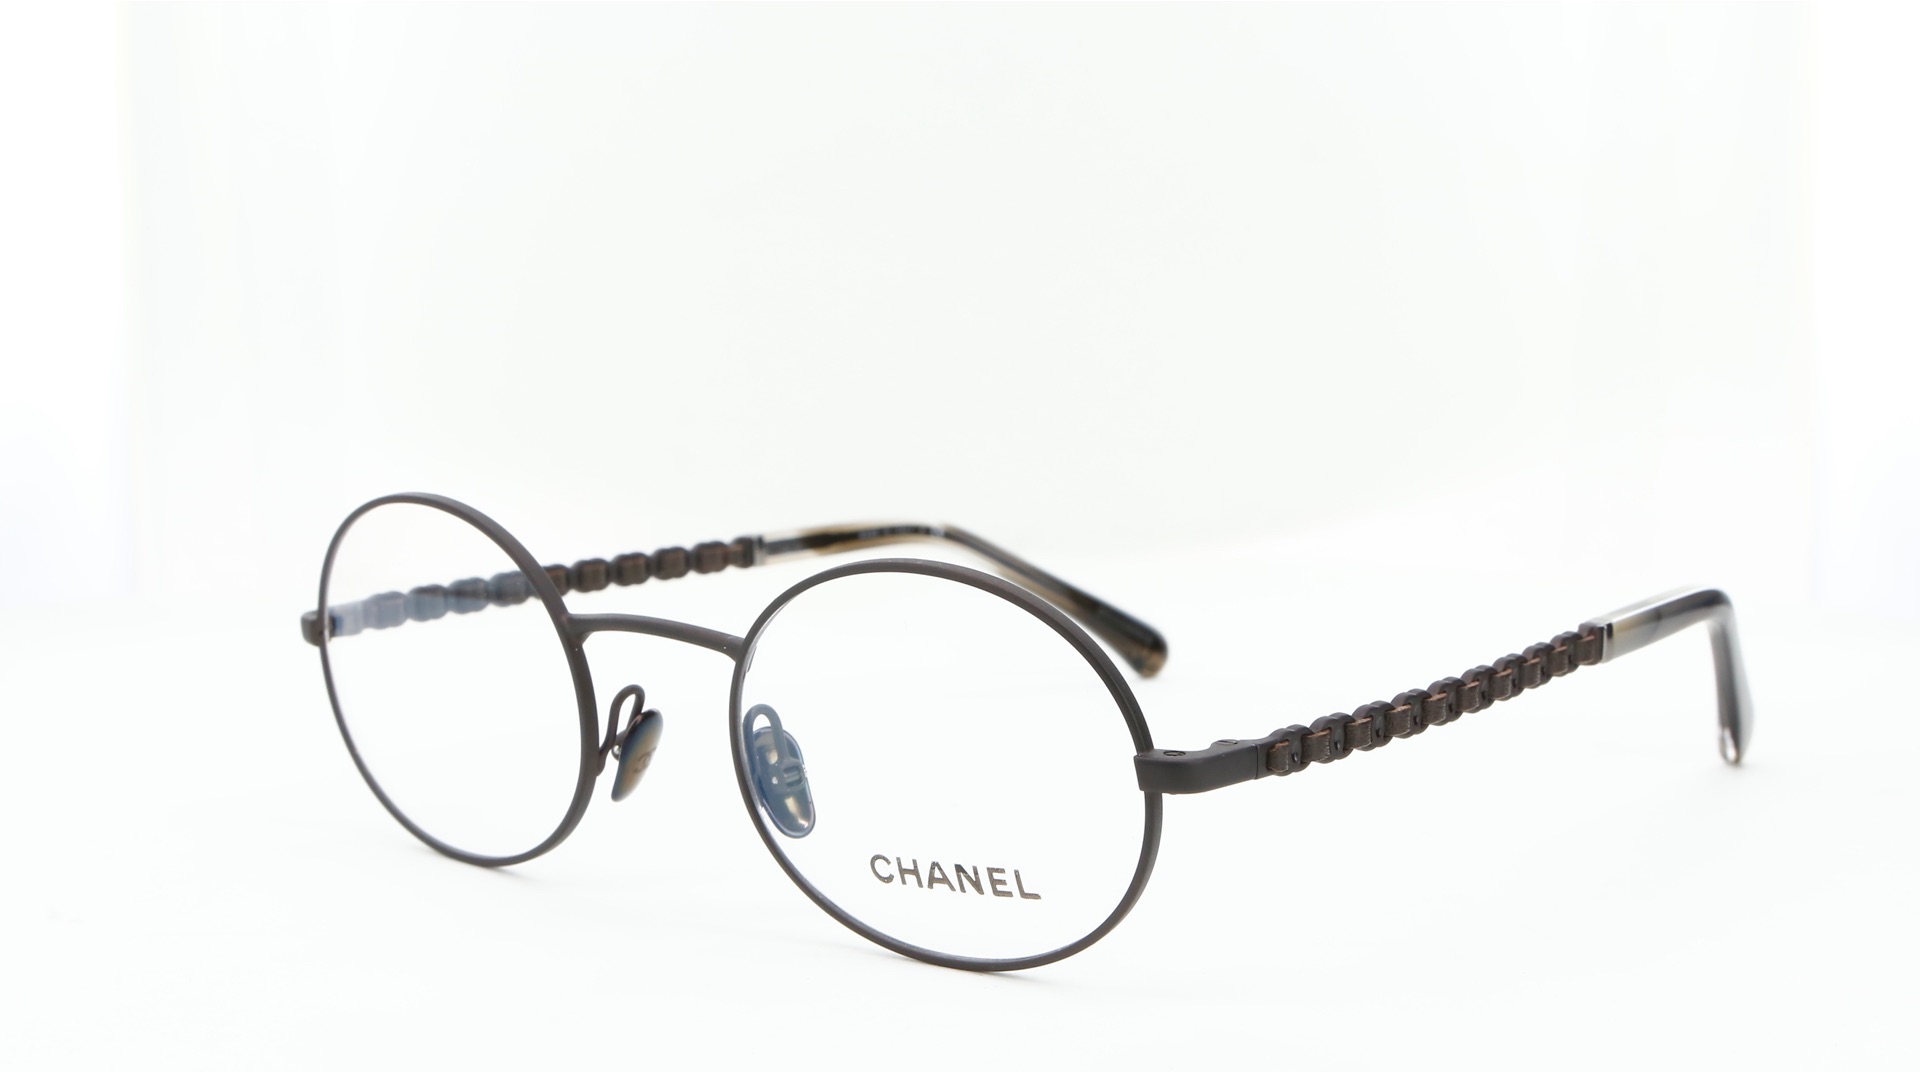 Chanel - ref: 84010